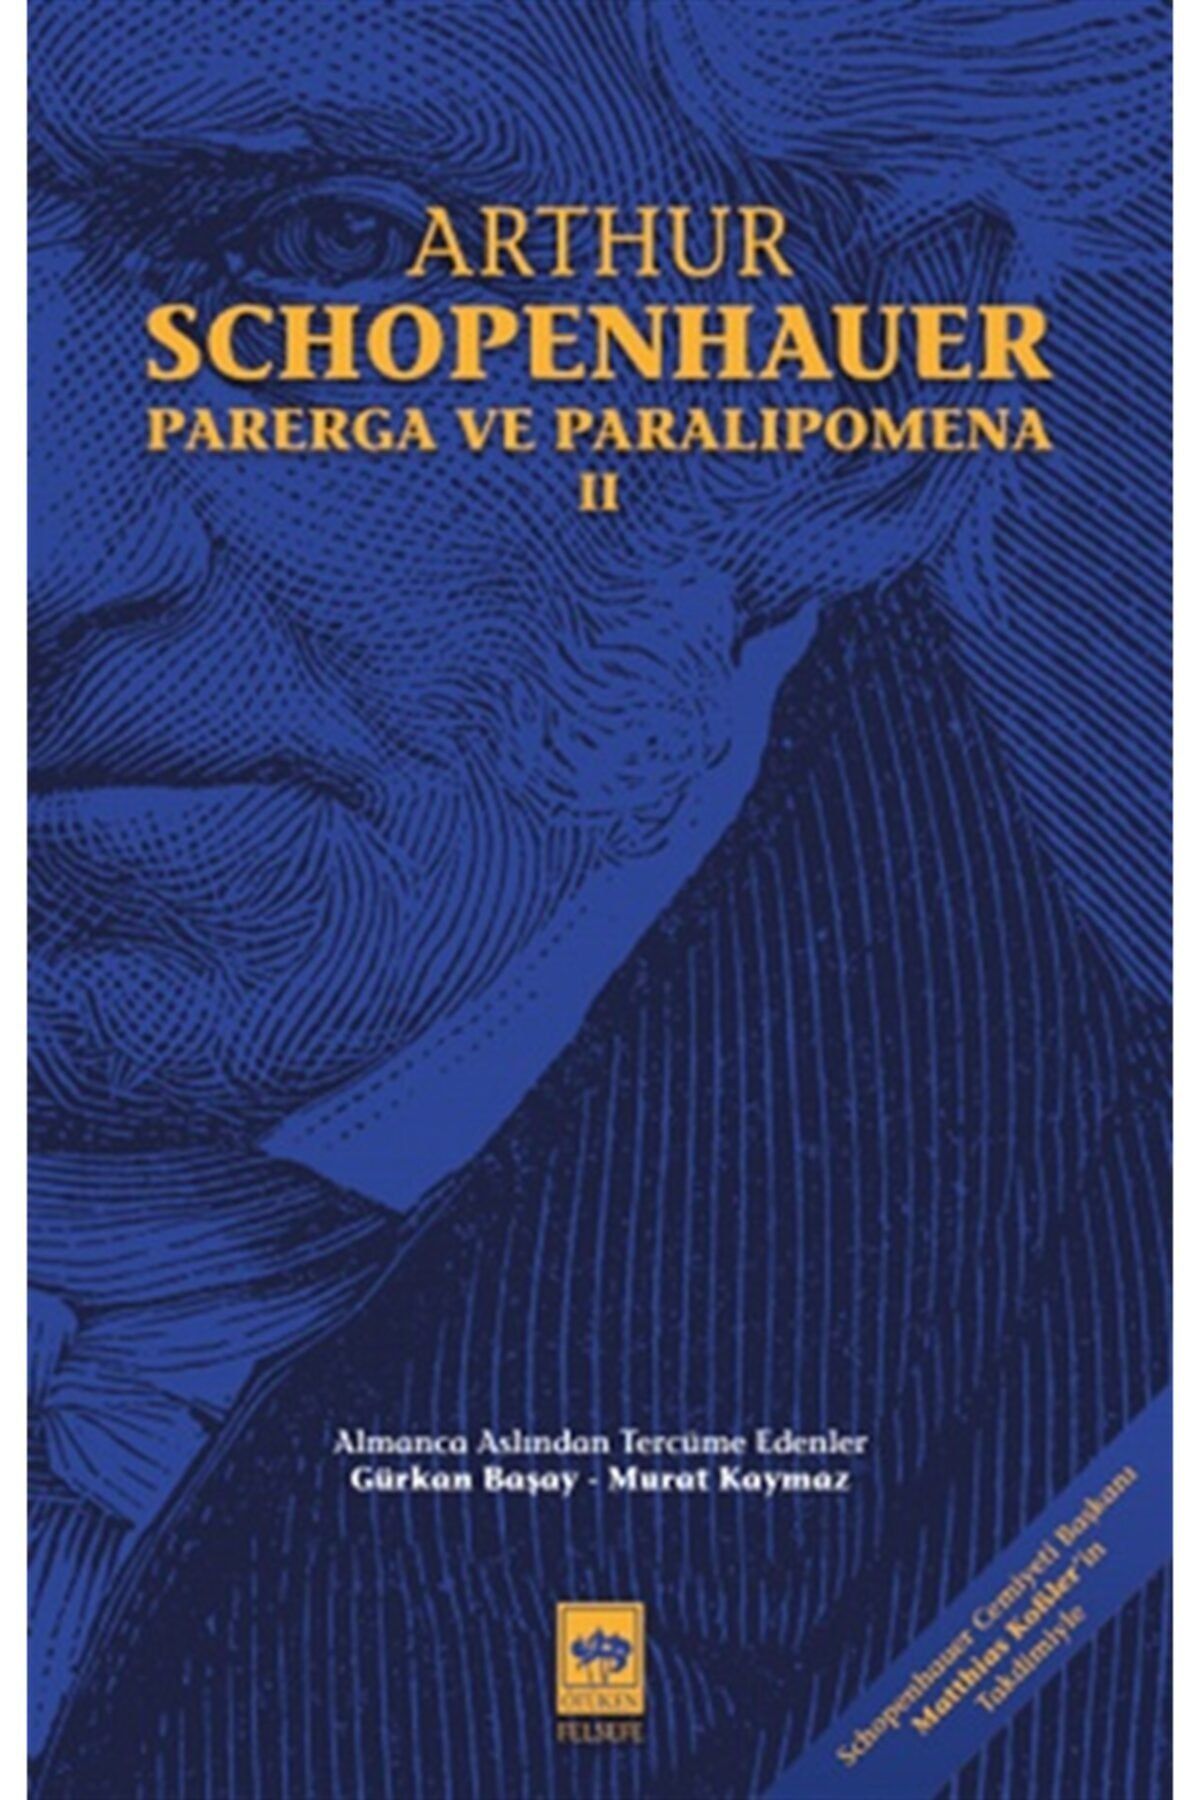 Ötüken Neşriyat Parerga Ve Paralipomena Cilt 2 - - Arthur Schopenhauer Kitabı